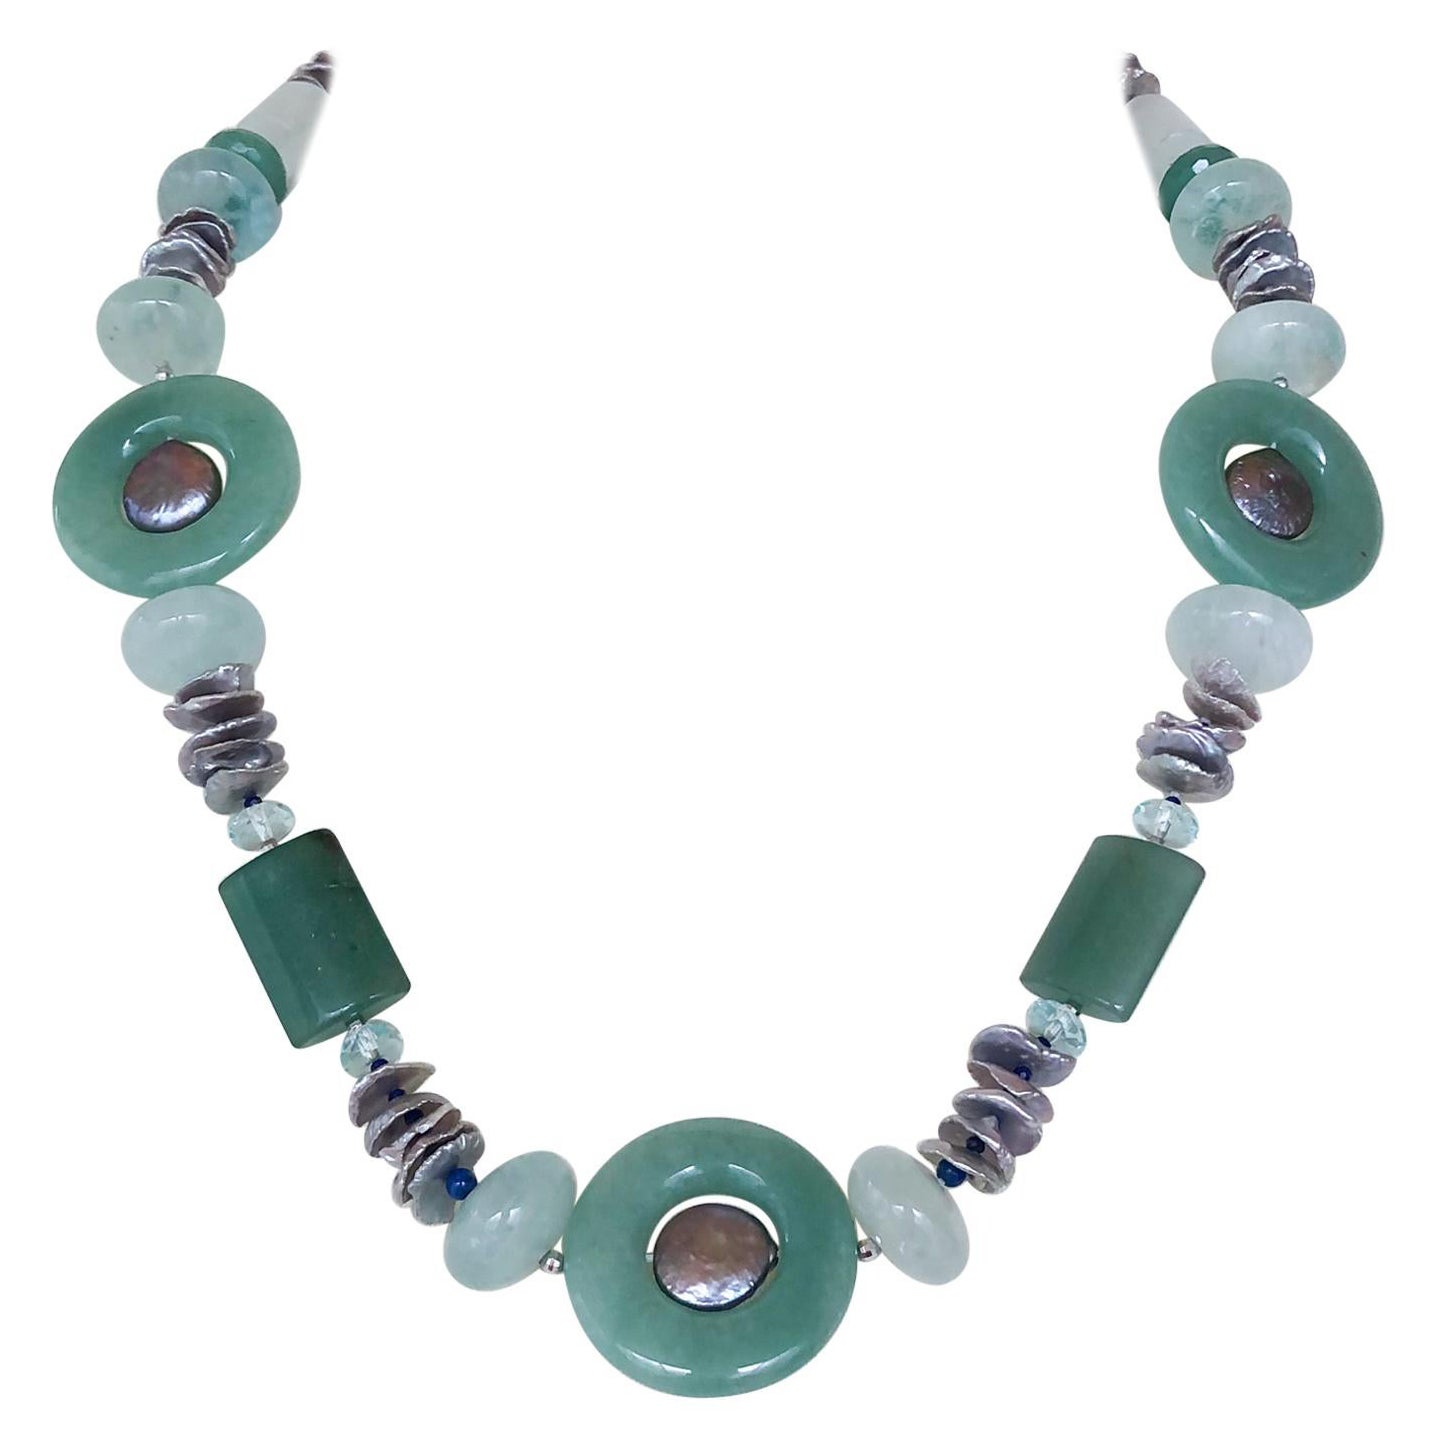 Marina J. Halskette aus Jade, Aquamarin, Lapislazuli, Aventurin und grauen Perlen